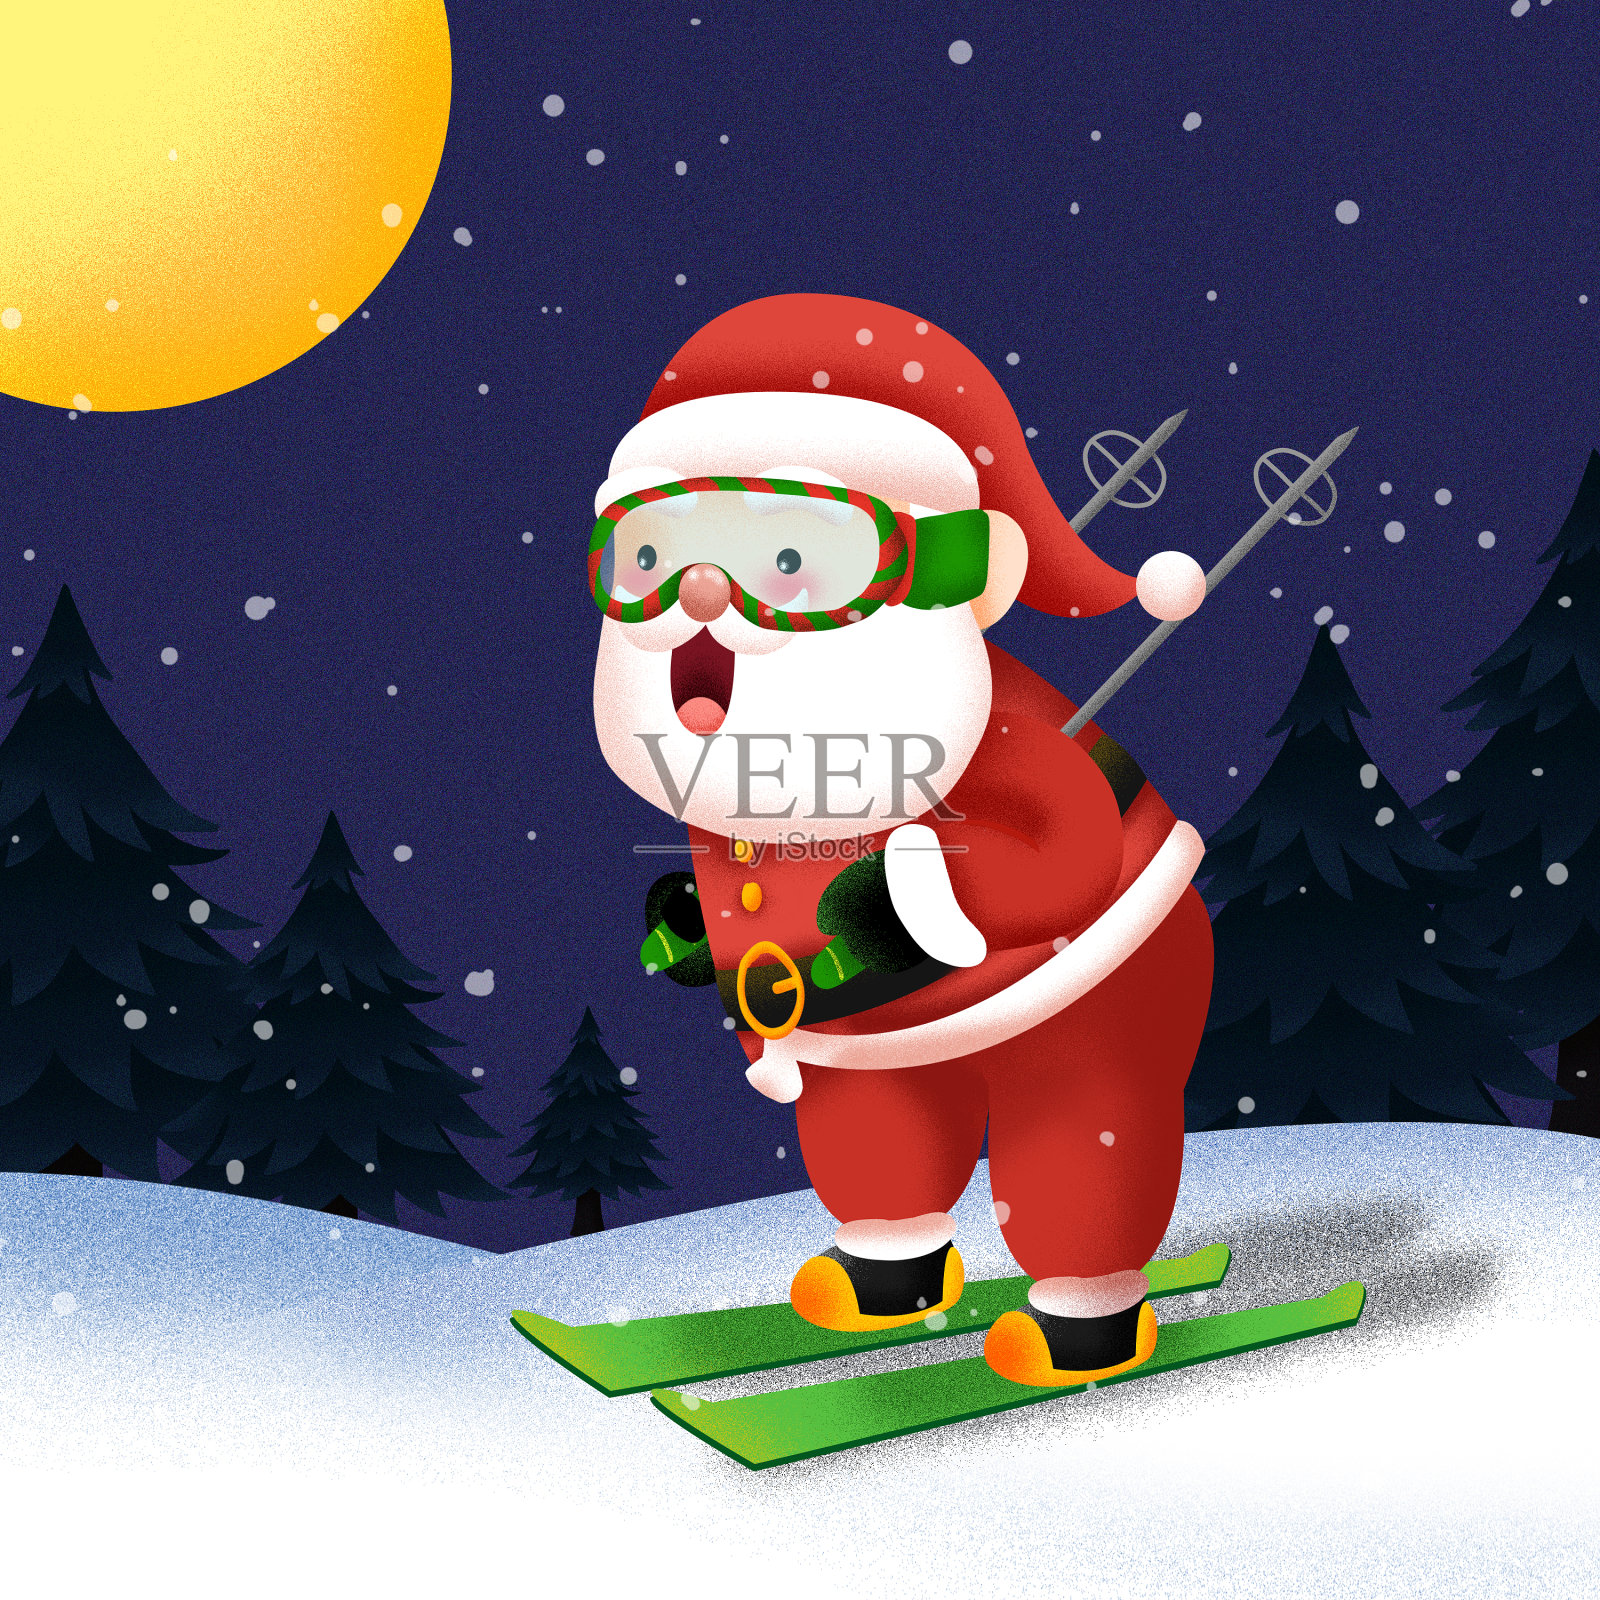 快乐的中老年人冬季滑雪风景名胜免费下载_jpg格式_3840像素_编号44179822-千图网